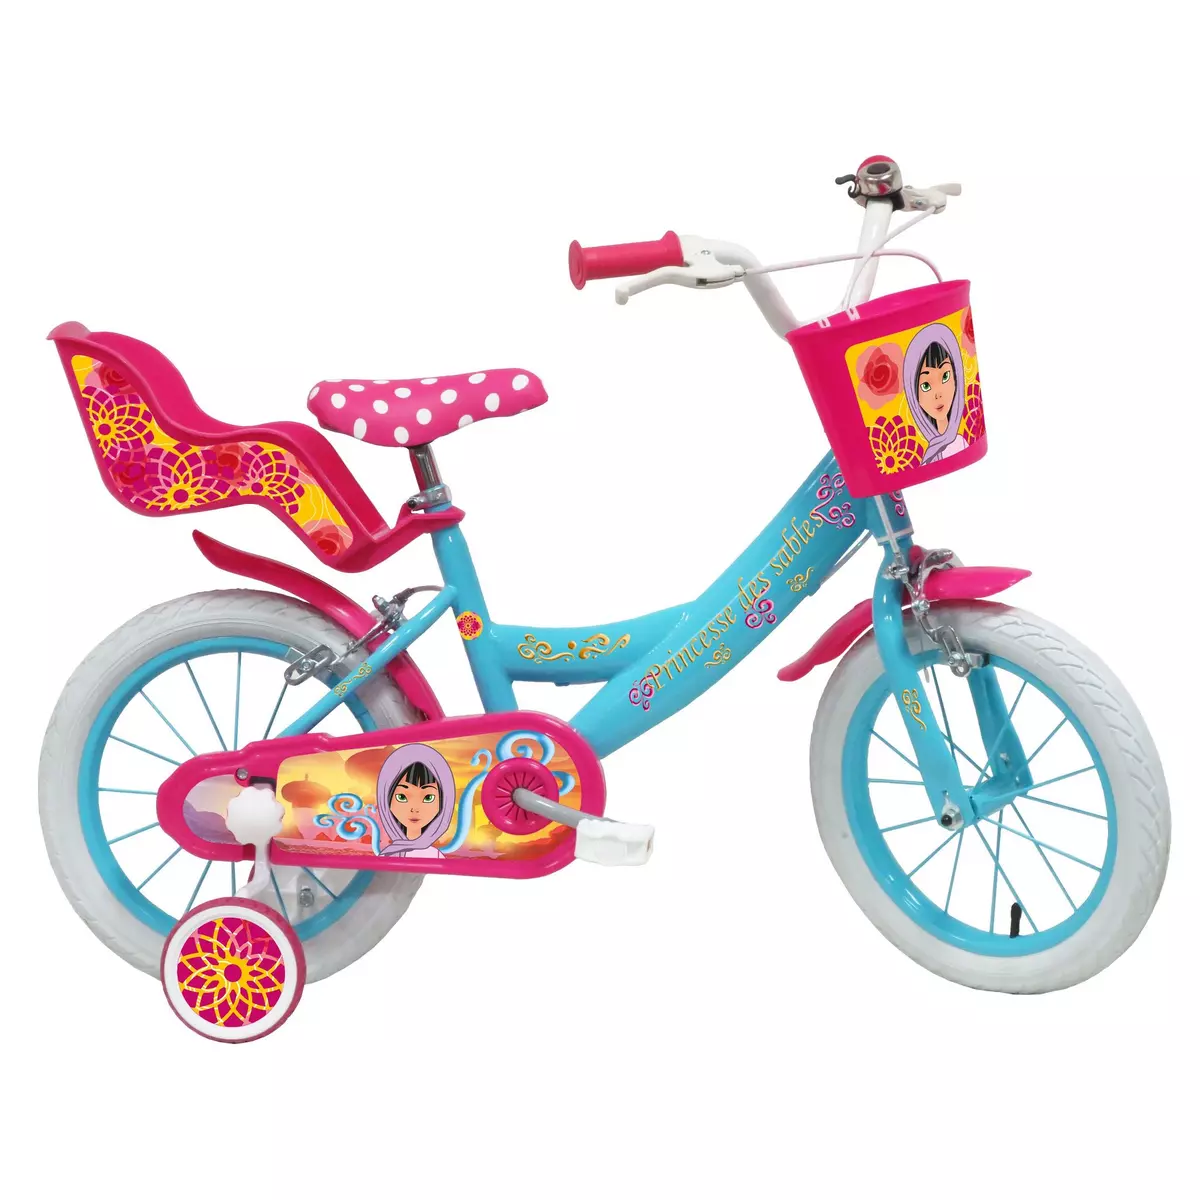  Vélo 14  Fille  Princesse des sables  pour enfant de 4 à 6 ans avec stabilisateurs à molettes